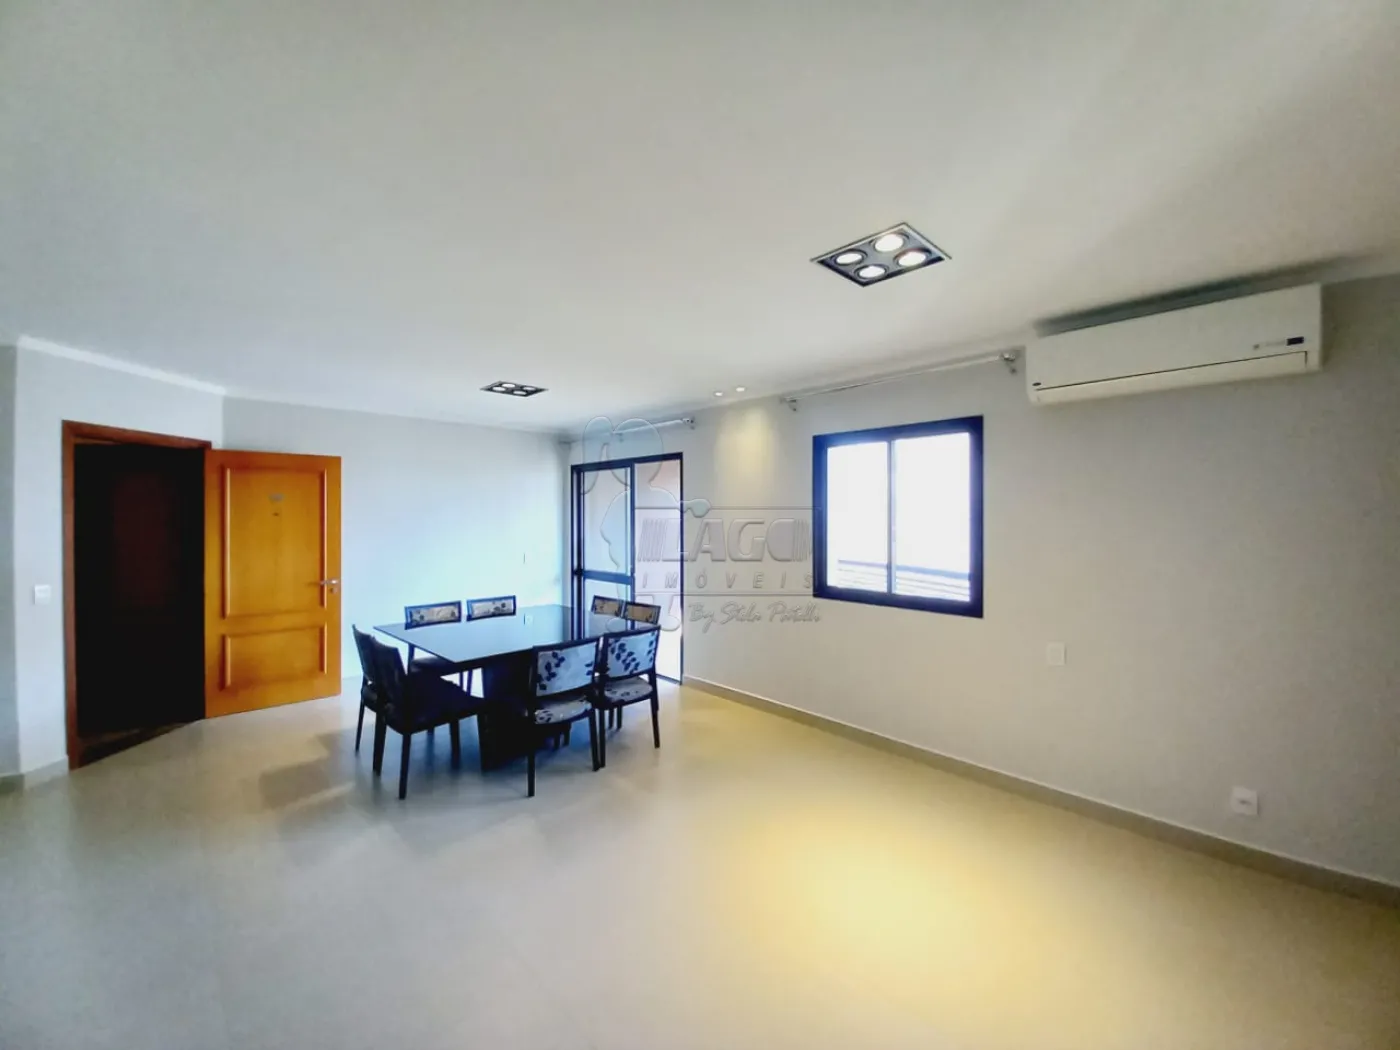 Alugar Apartamentos / Padrão em Ribeirão Preto R$ 3.700,00 - Foto 2